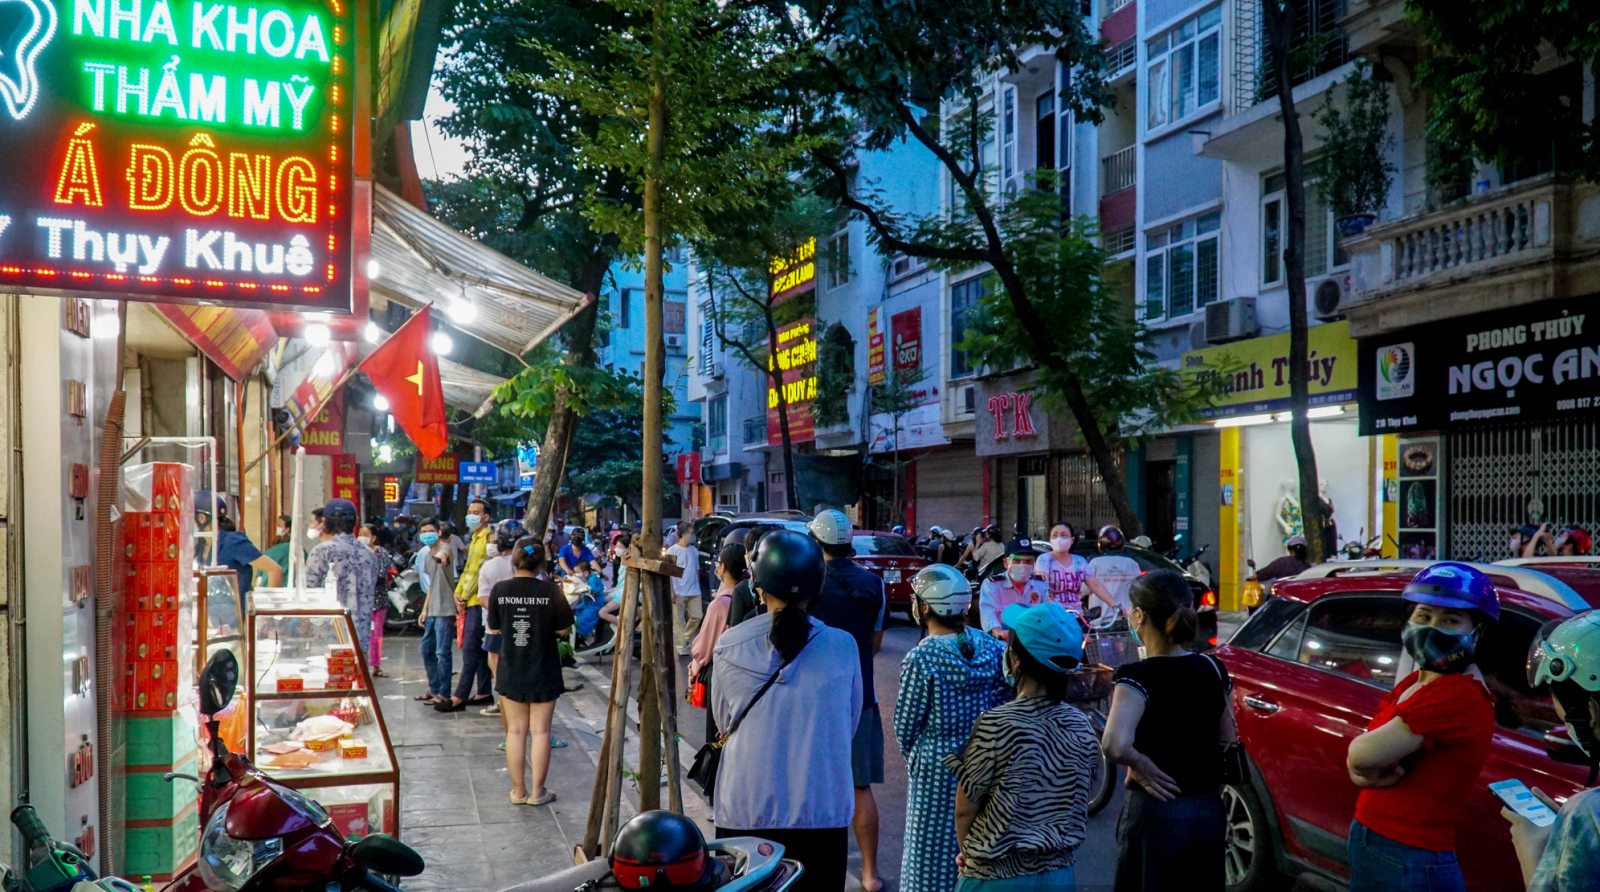 Hà Nội: Người dân xếp hàng dài mua bánh trung thu, giao thông ùn tắc 